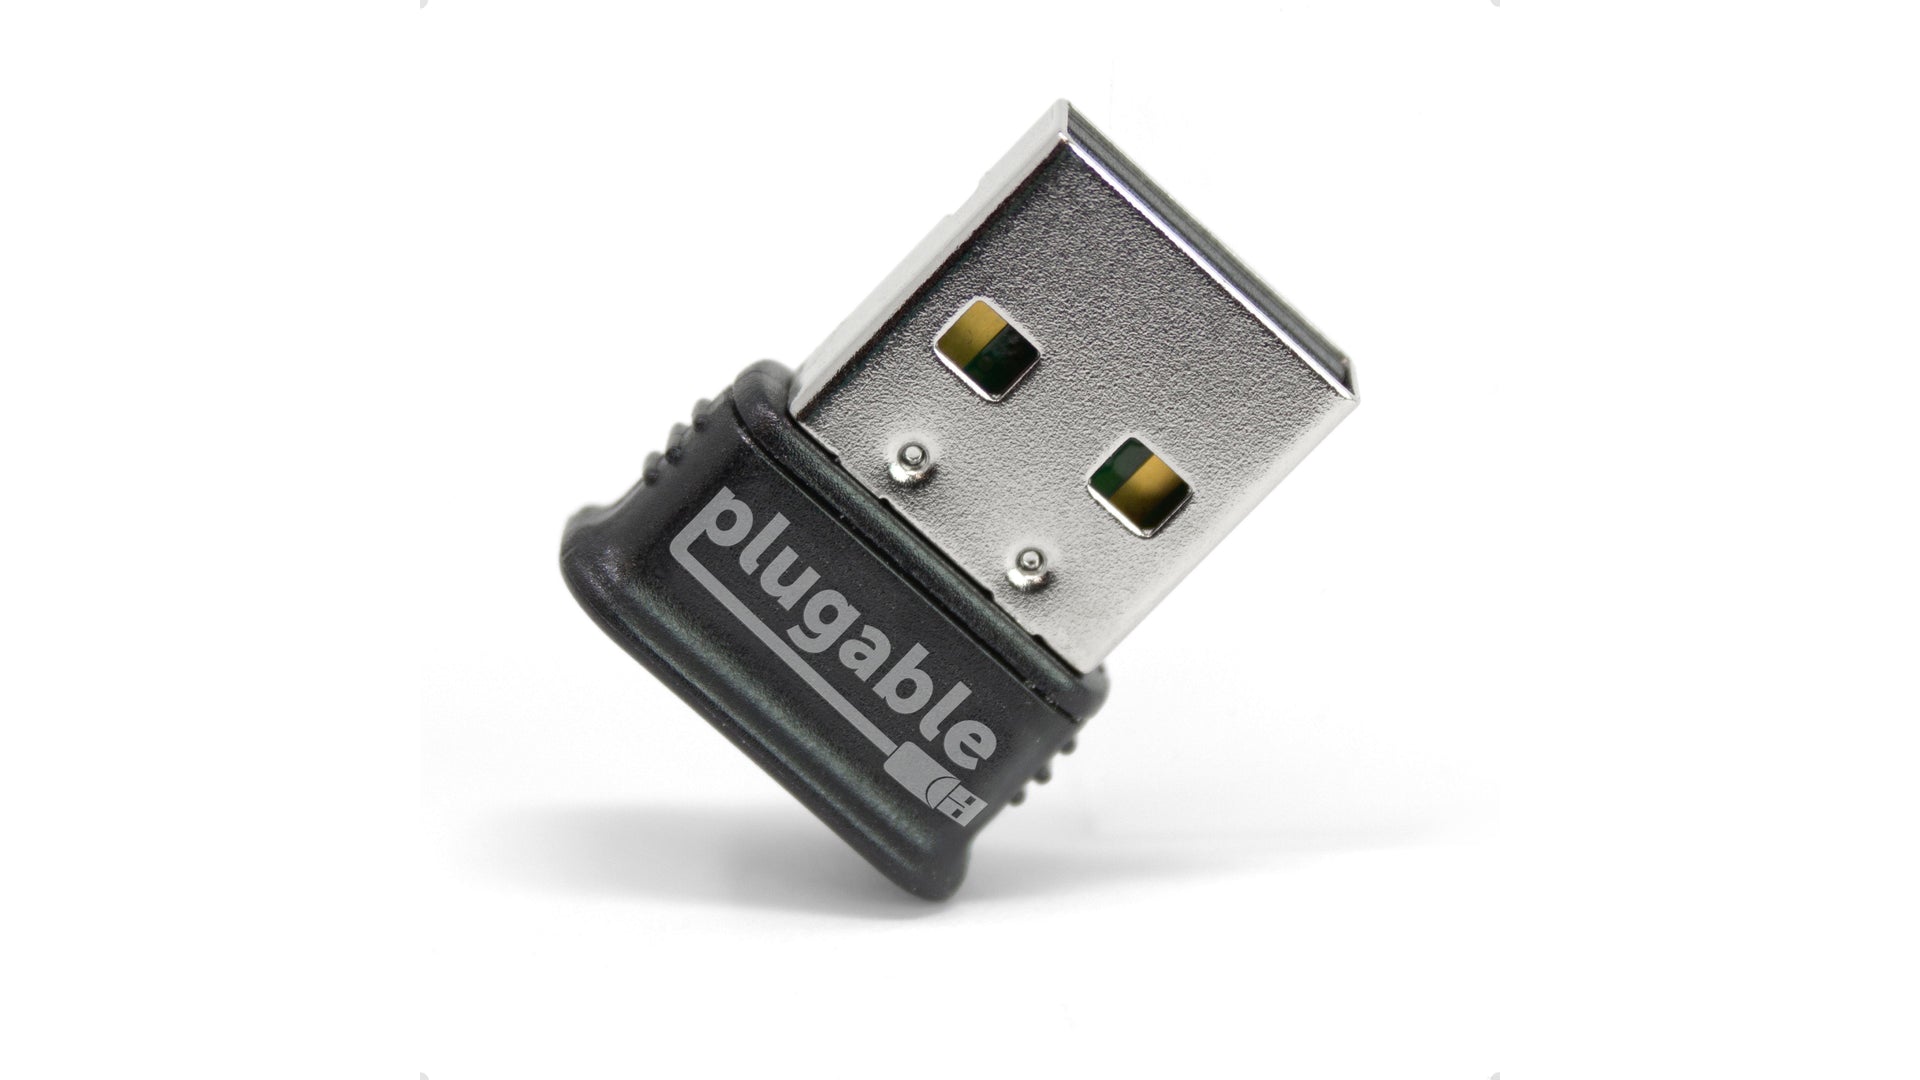 REVIEW ADAPTADOR BLUETOOTH USB 4.0 PARA PC 